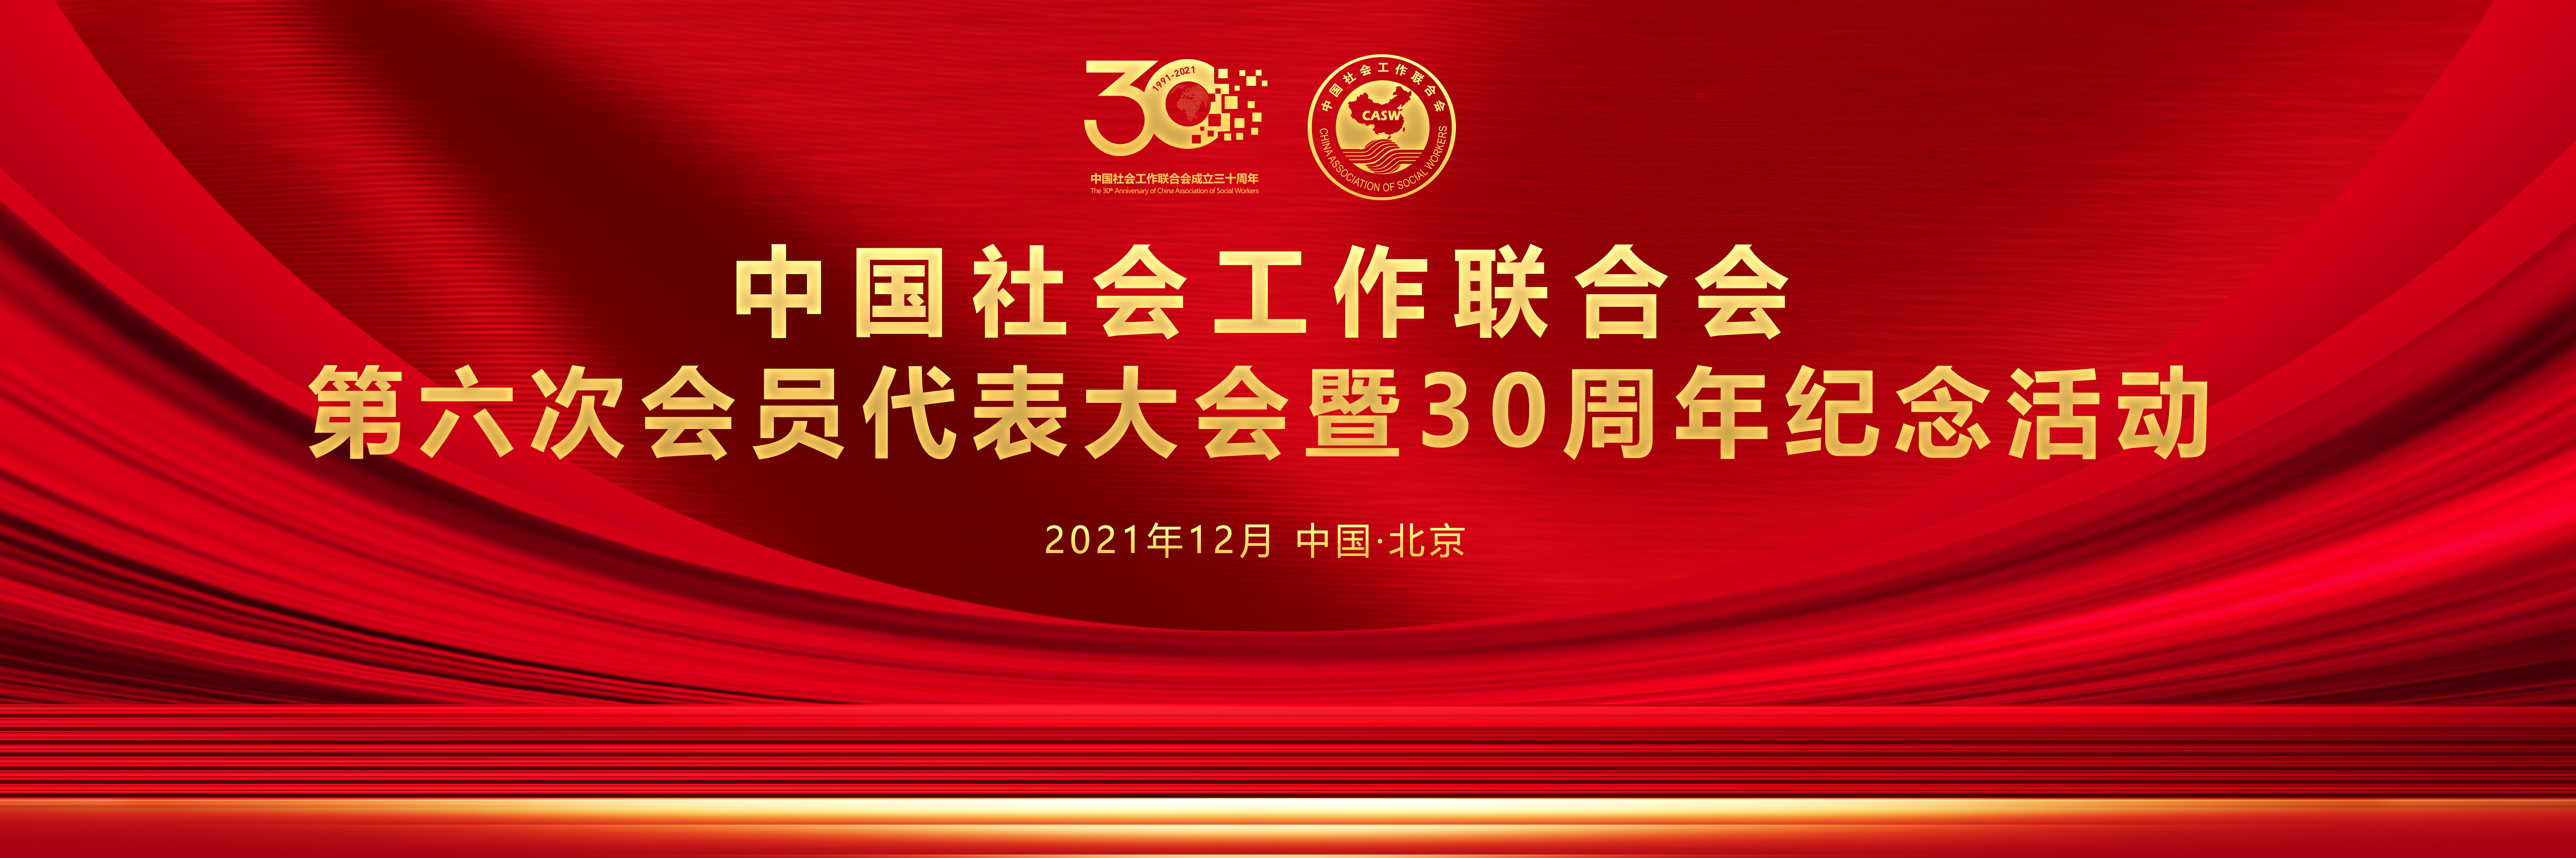 中國社會工作聯合會第六次會員代表大會暨30周年紀念活動在北京舉行